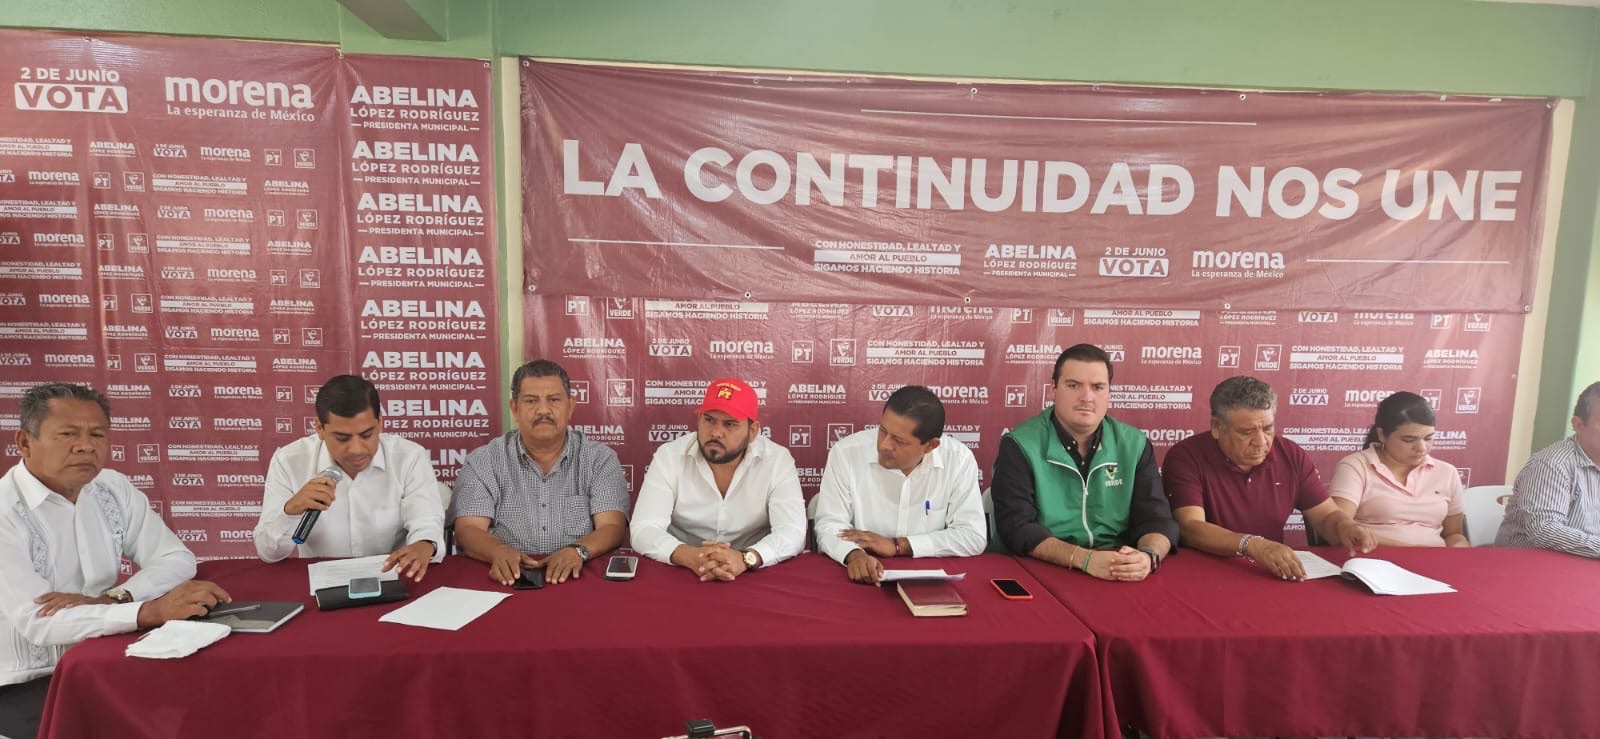 Llama Comisión Política de Abelina López Rodríguez a ex candidatos Yoshio Ávila y Carlos Granda a apegarse a la ley